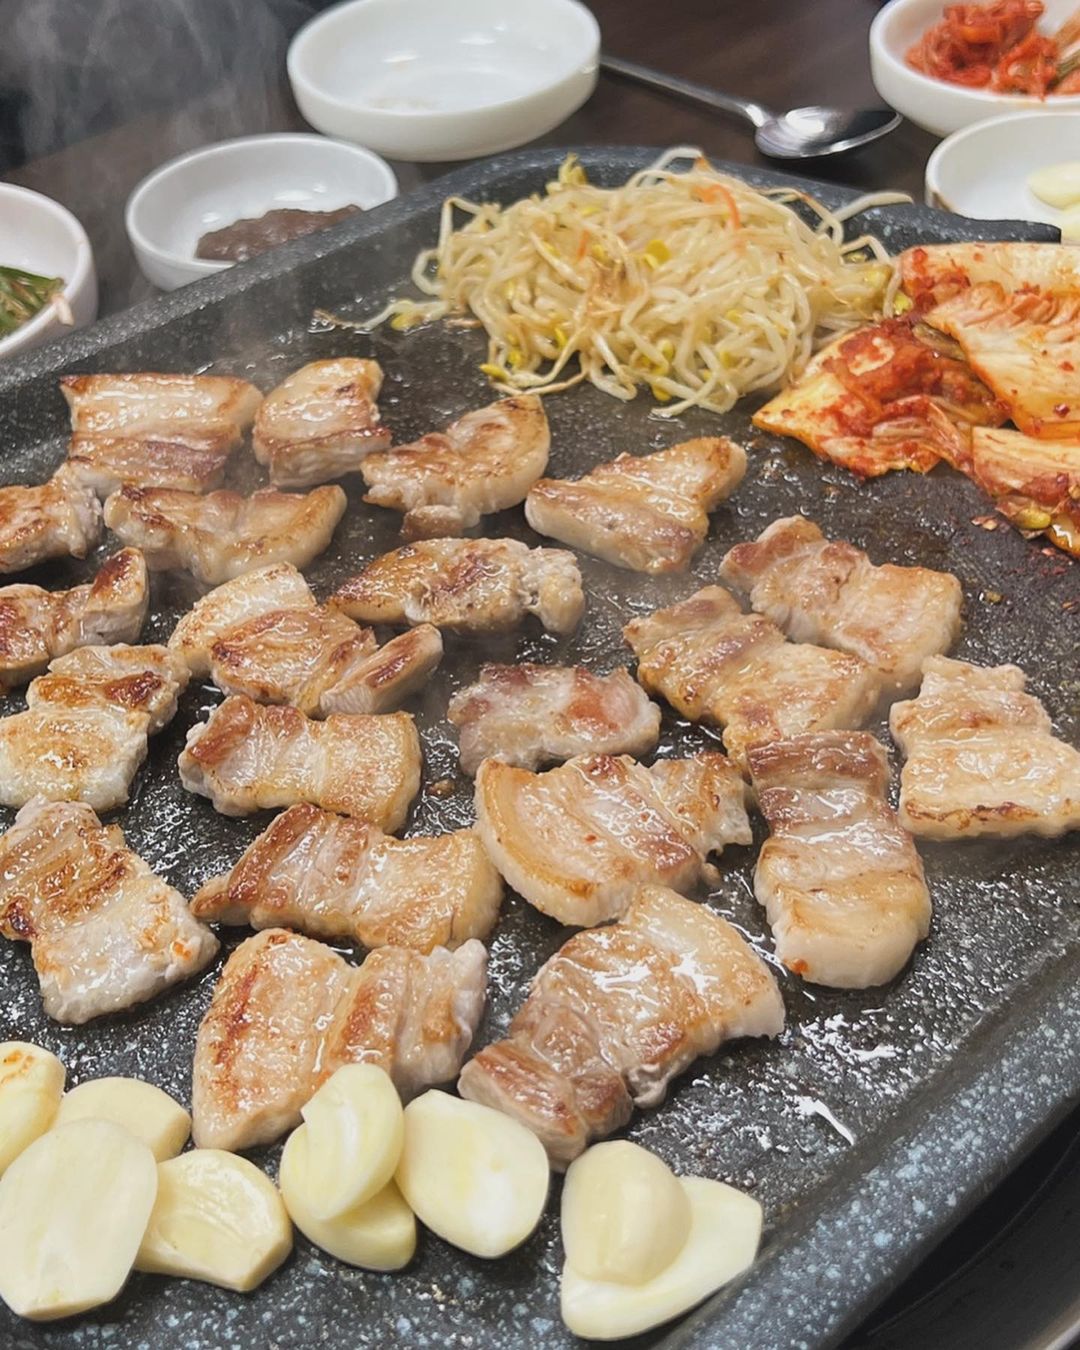 출처 : 장미식당 인스타그램 검색 결과